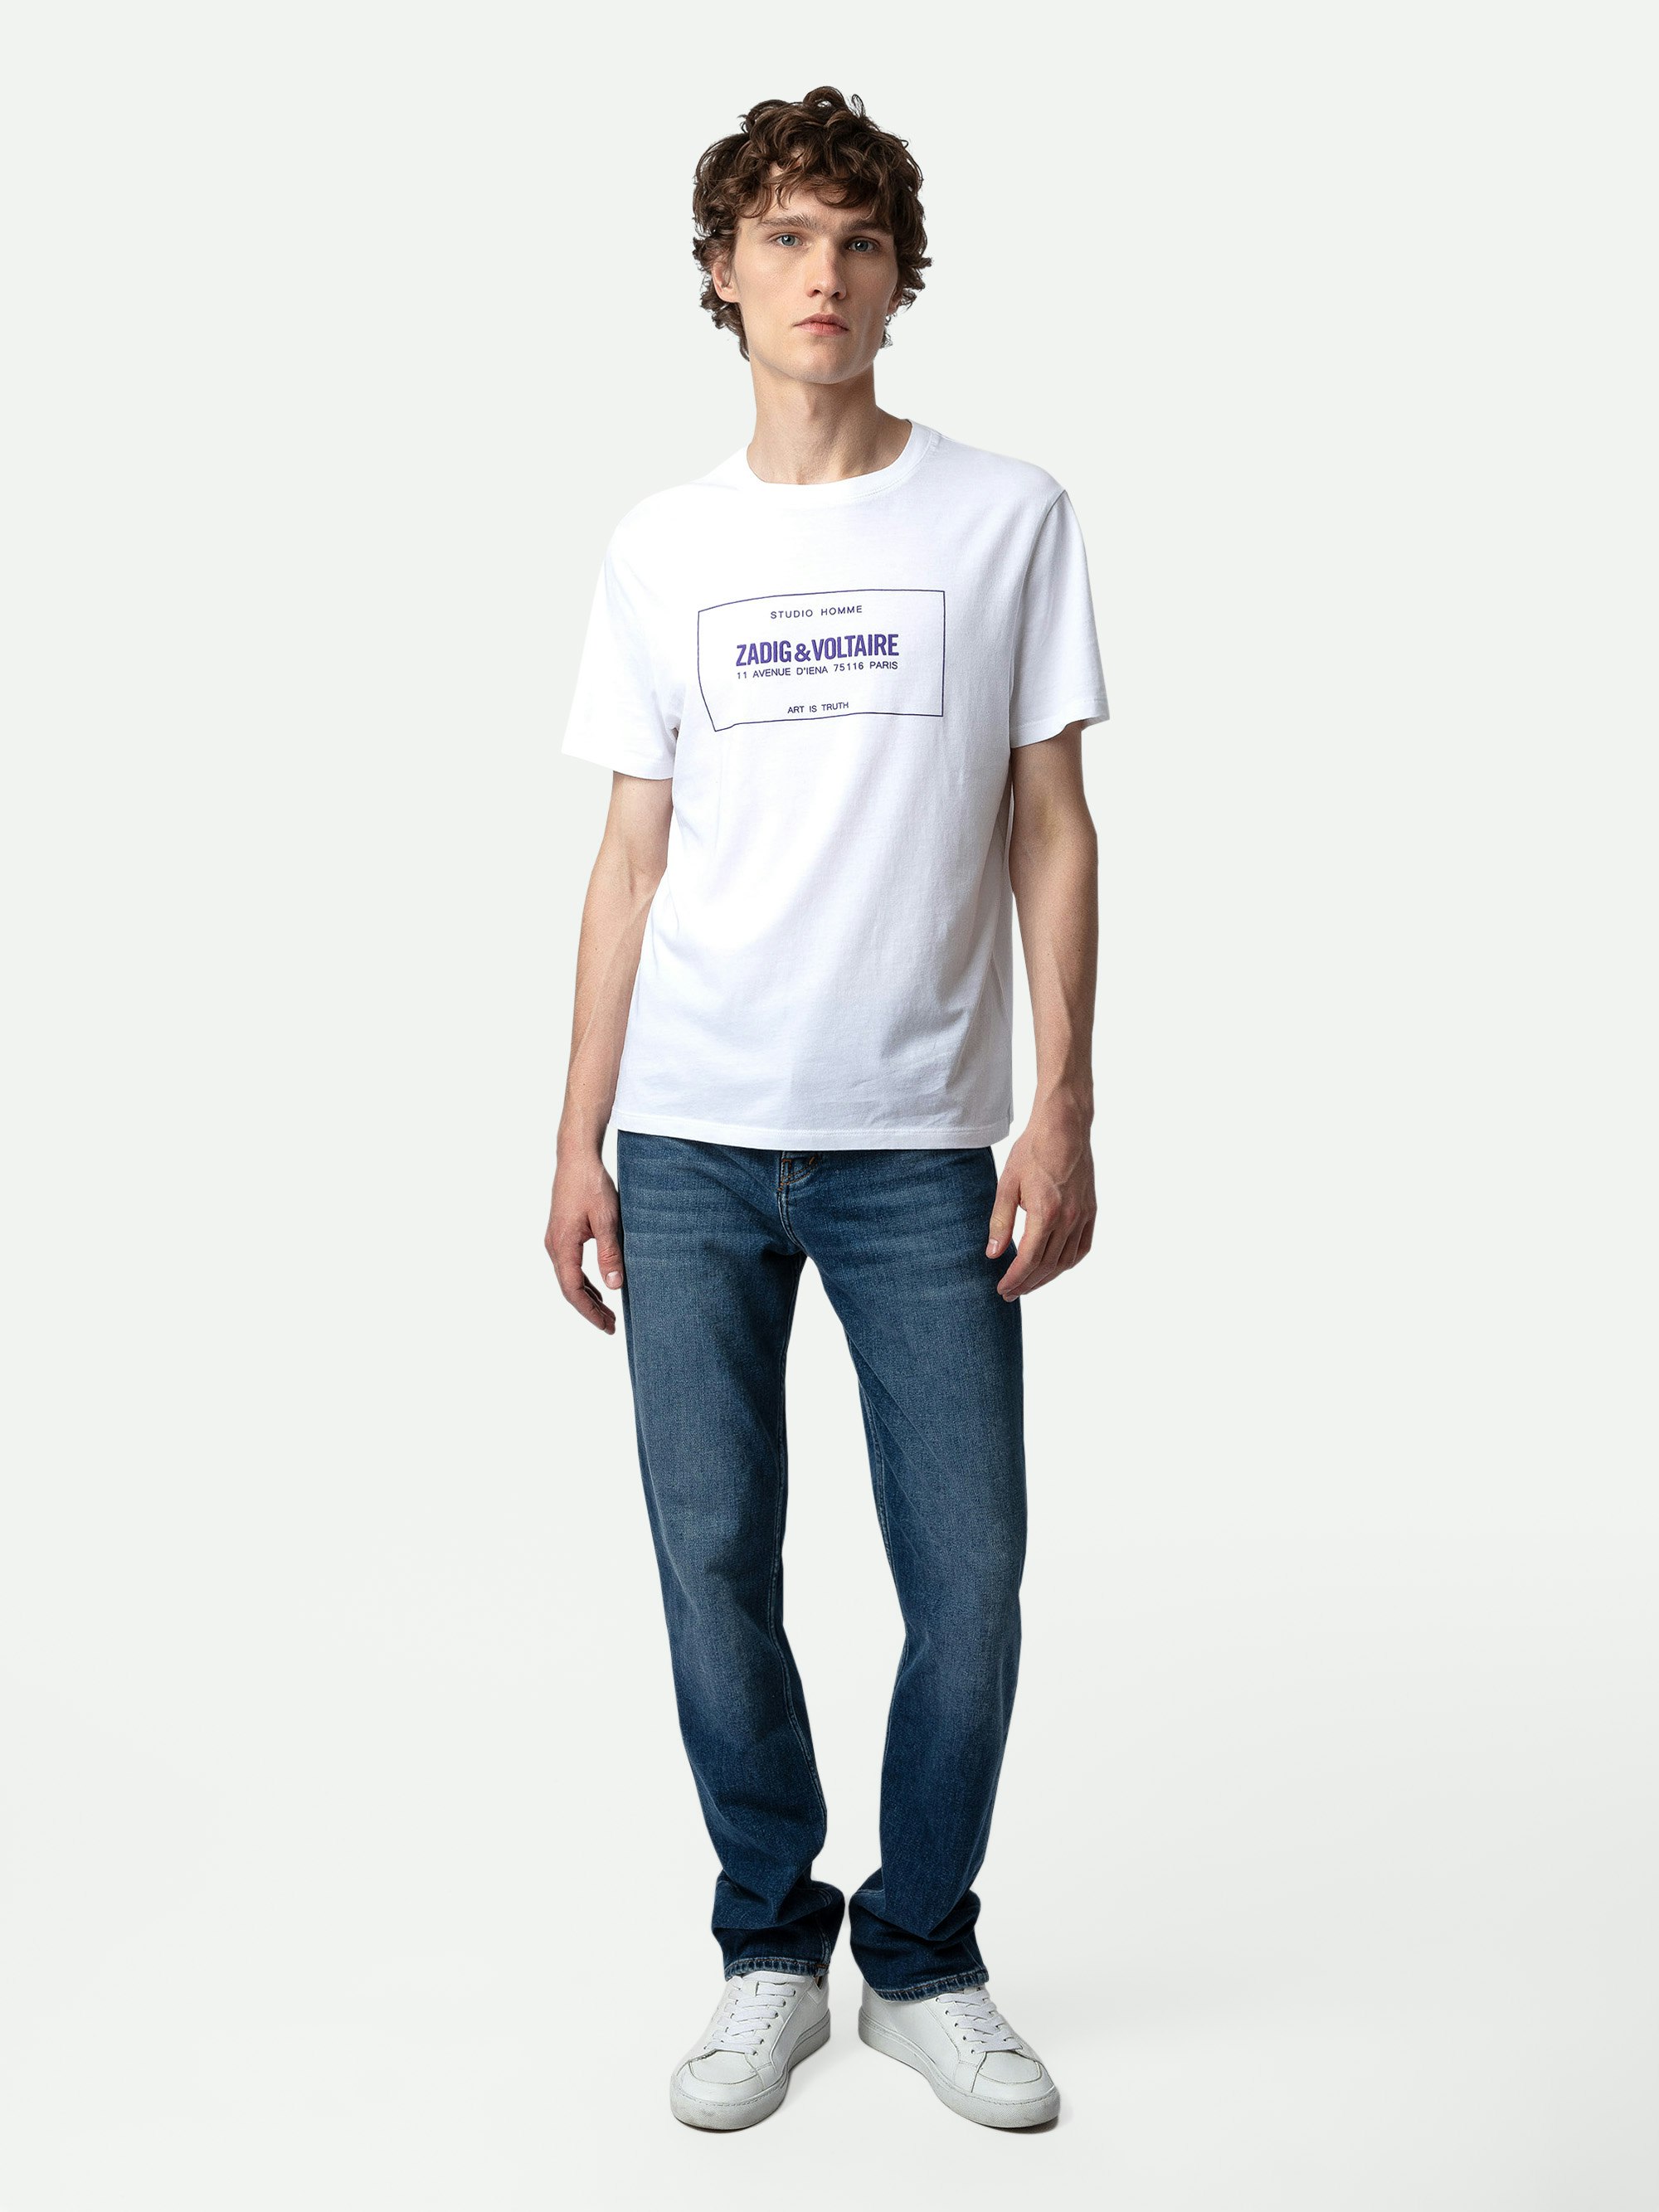 Camiseta Ted Escudo - Camiseta de algodón de manga corta blanca con cuello redondo y escudo Studio.